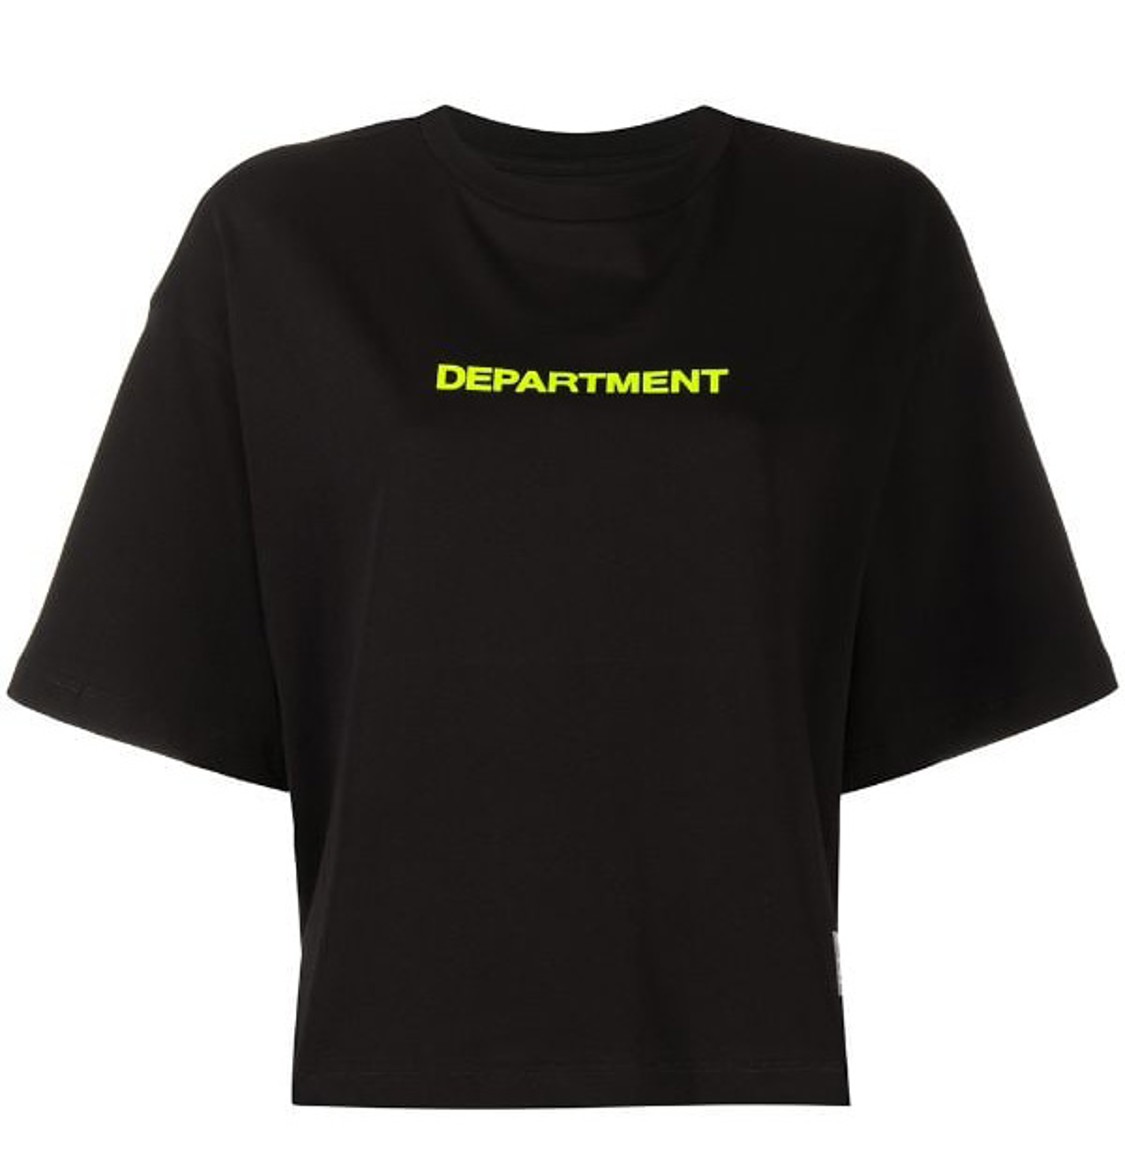 shop Department 5 Saldi T-shirts: T-shirts Department 5, modello corto e largo, manica corta, girocollo, scritta sul davanti fluorescente.

Composizione: 100% cotone. number 1843